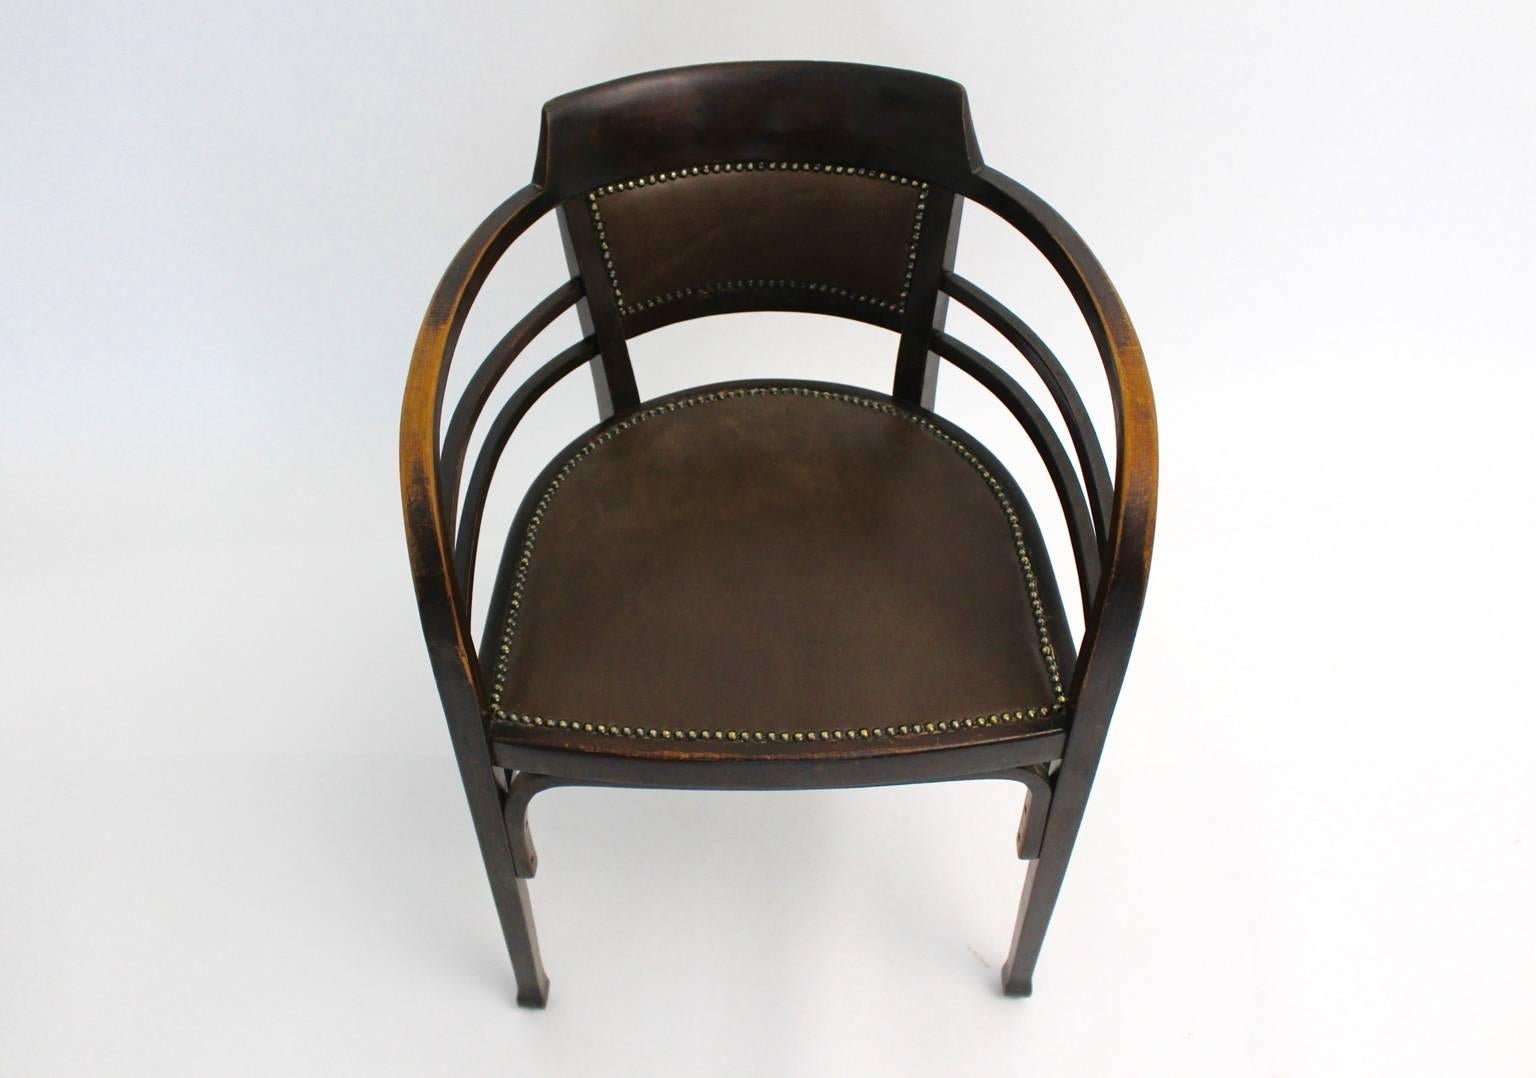 Jugendstil Vintage Beech Armchair Desk Chair Josef Olbrich Thonet Vienna c1902 For Sale 1